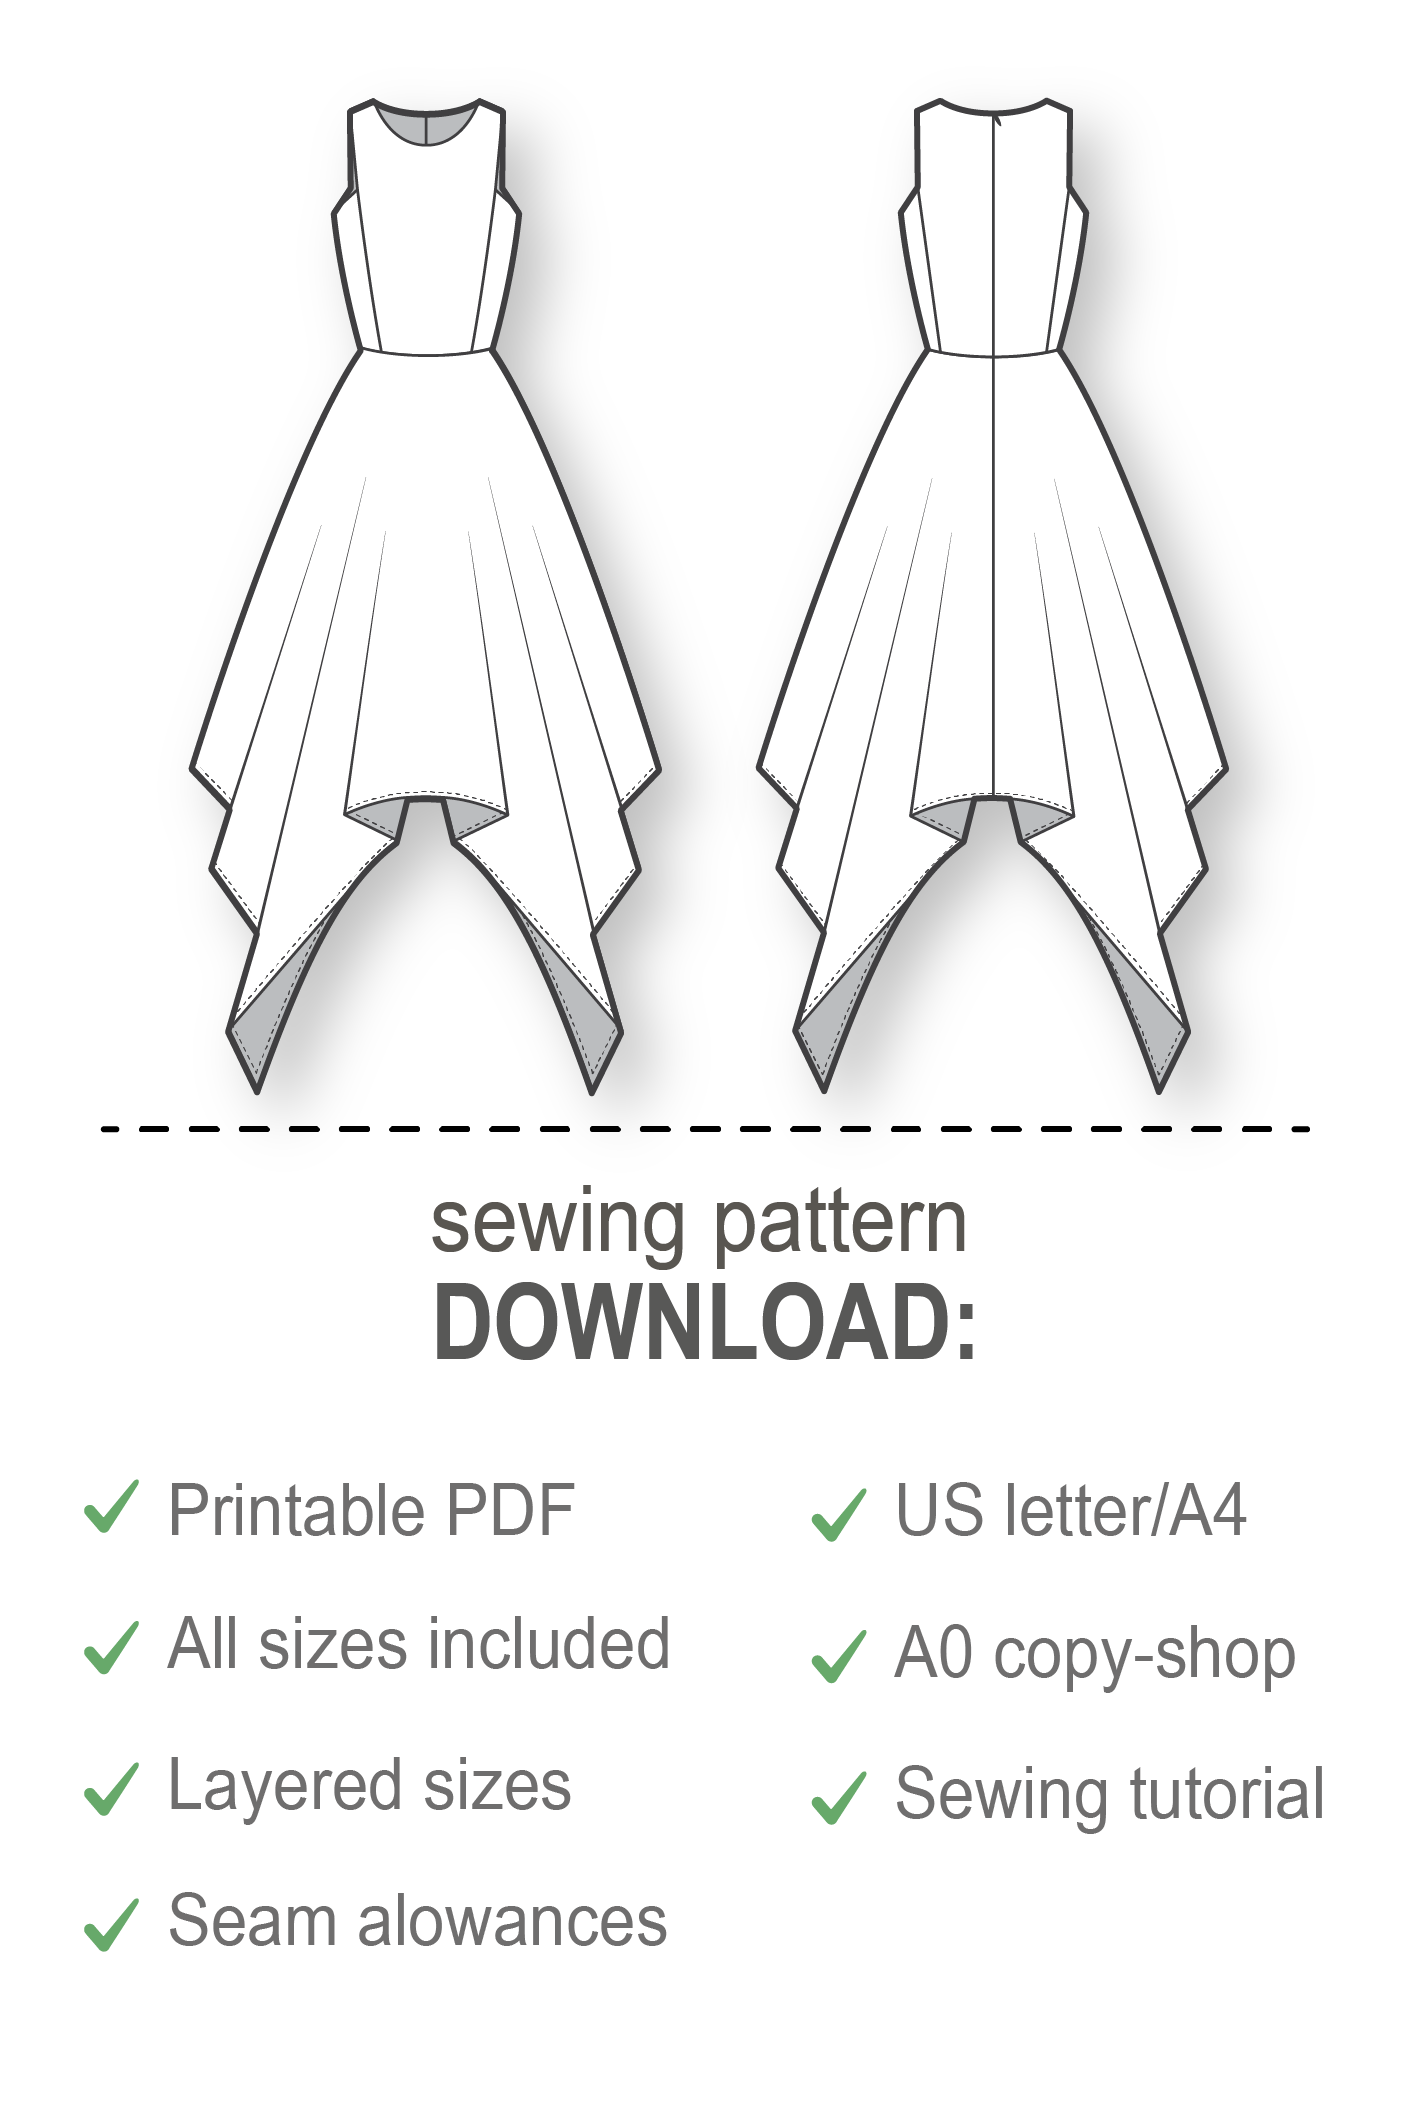 Dress Pattern - Dress Sewing Patterns - Sewing Tutorials - Maxi Dress Pattern - PDF Sewing Patterns - Sewing Projects - Sewing Patterns